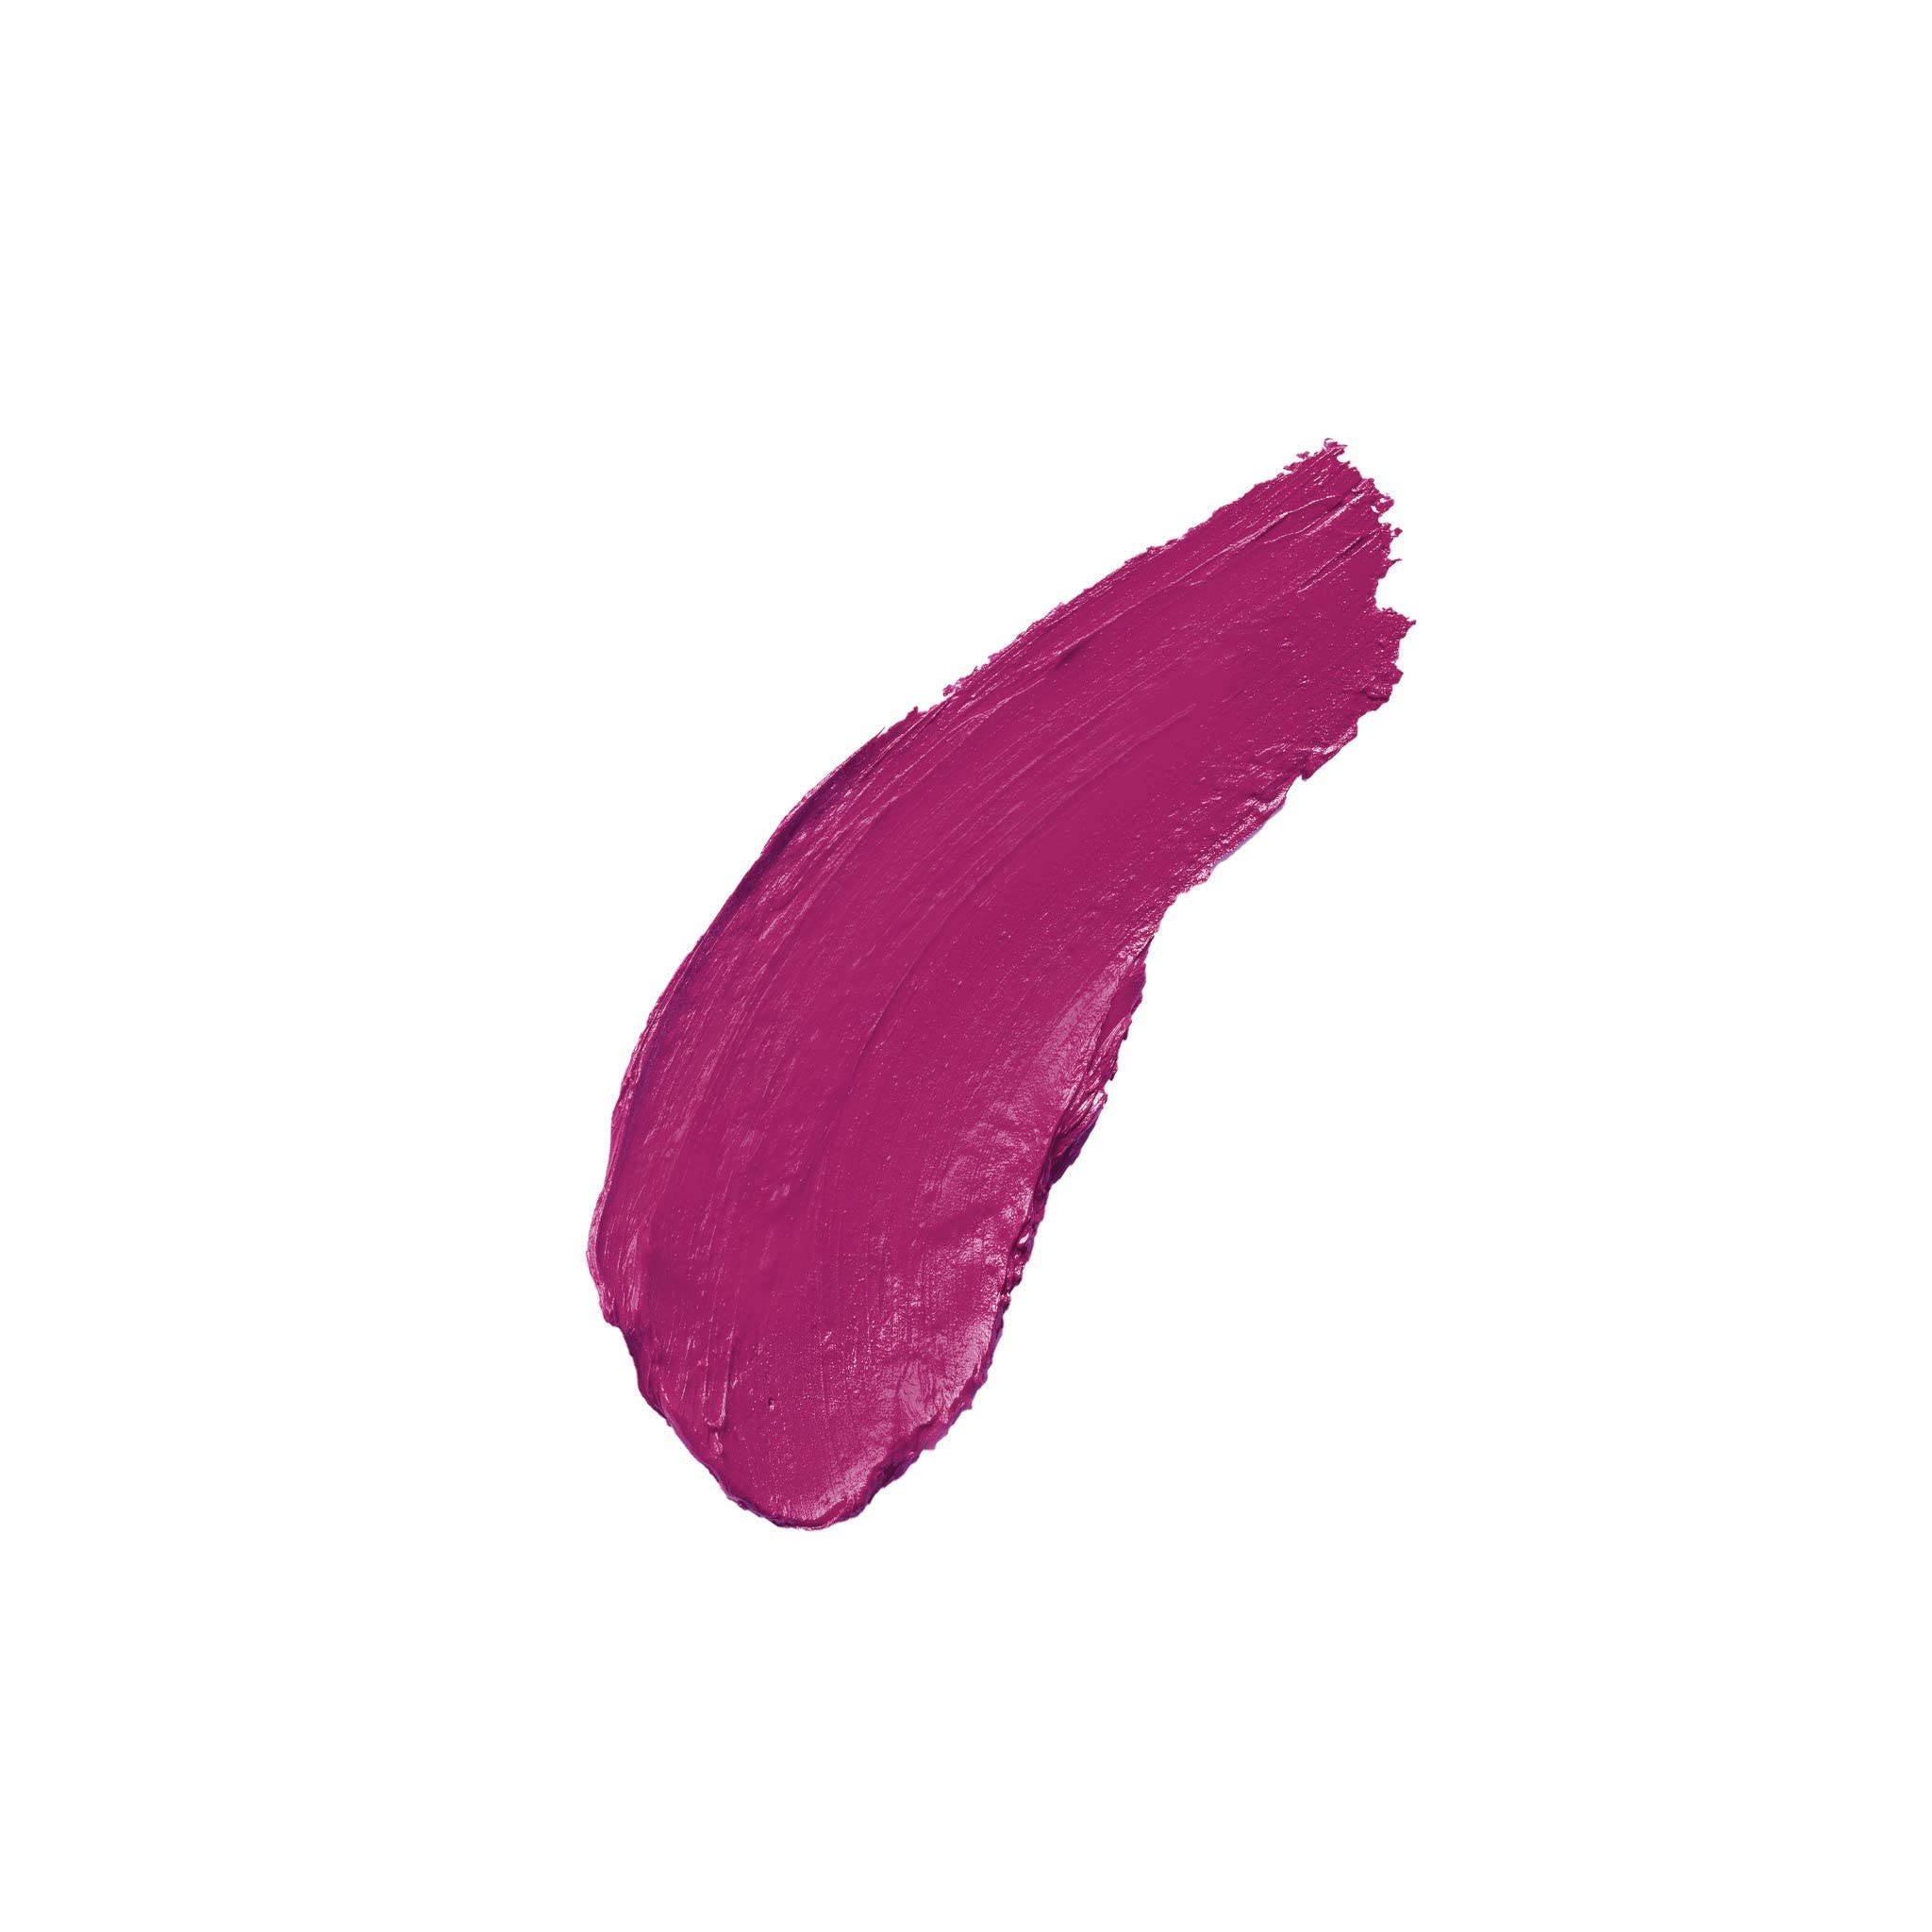 Milani Color Statement Lipstick - Uptown Mauve, Cruelty-Free Nourishing Lip Stick in Vibrant Shades, Purple Lipstick, 0.14 Ounce